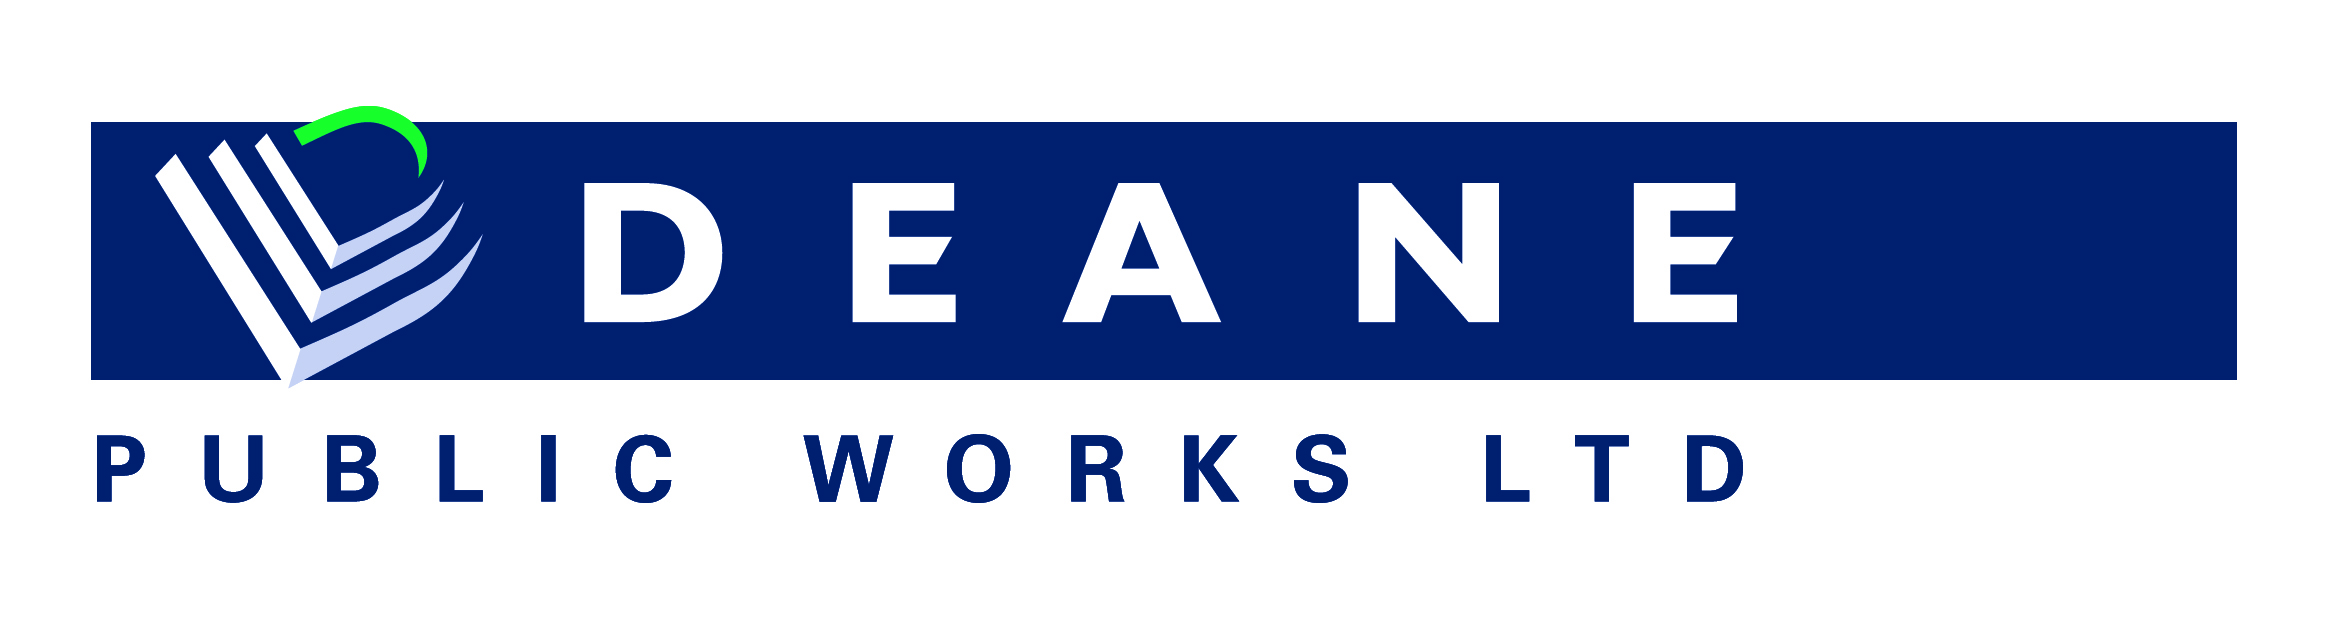 Deane Public Works Ltd.